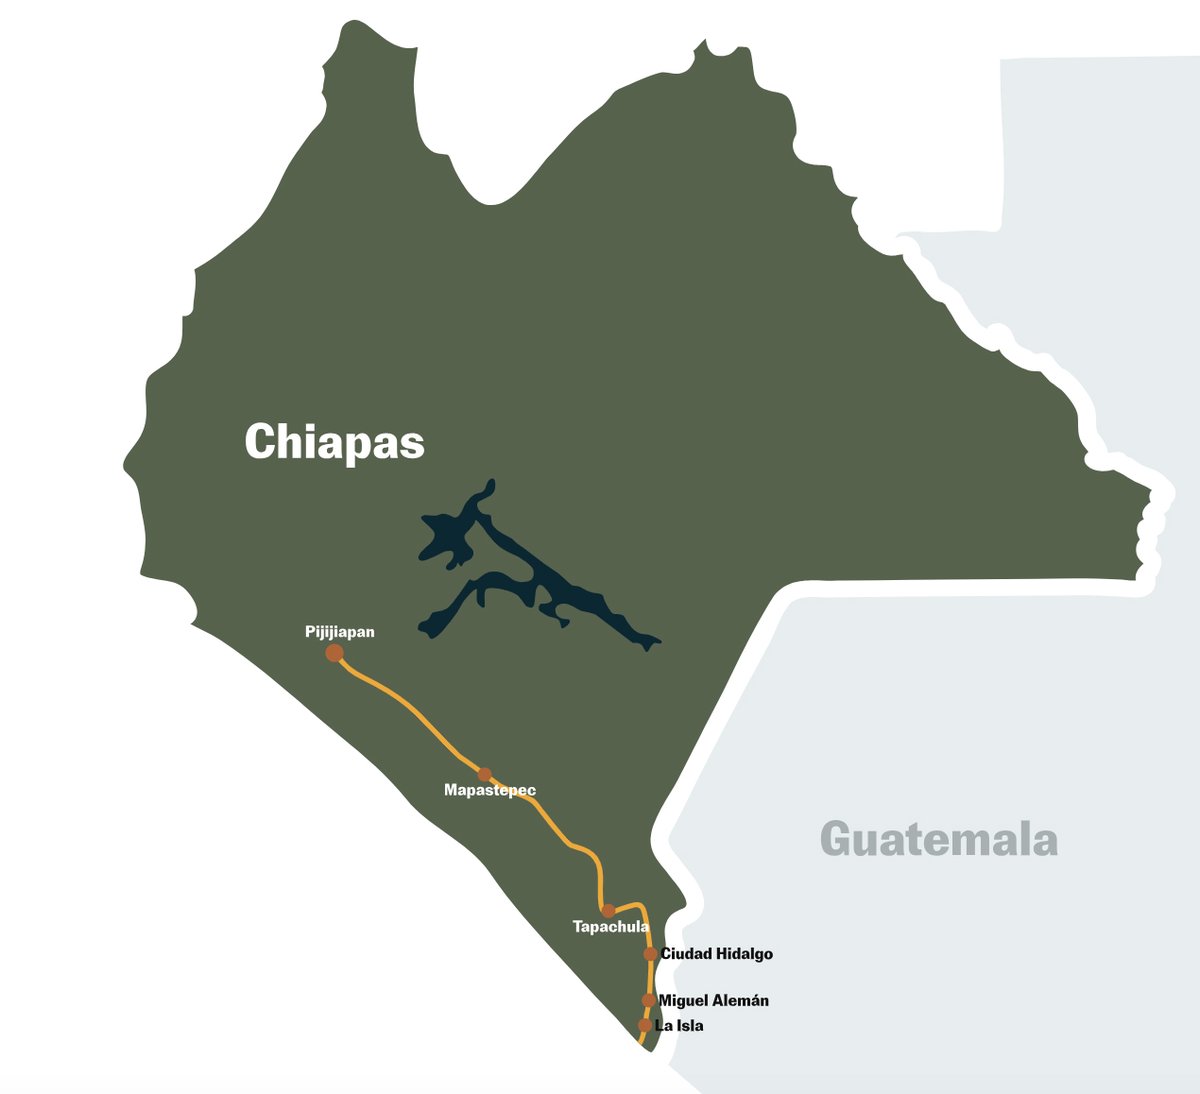 La última ruta que recorrimos es la del río Suchiate, que separa Guatemala y México. La batalla por el tráfico es feroz en esa parte de la frontera. De los ejecutados junto al río, a la persecución de migrantes hacia el norte. Sin embargo, los gobiernos estatal y federal tratan…